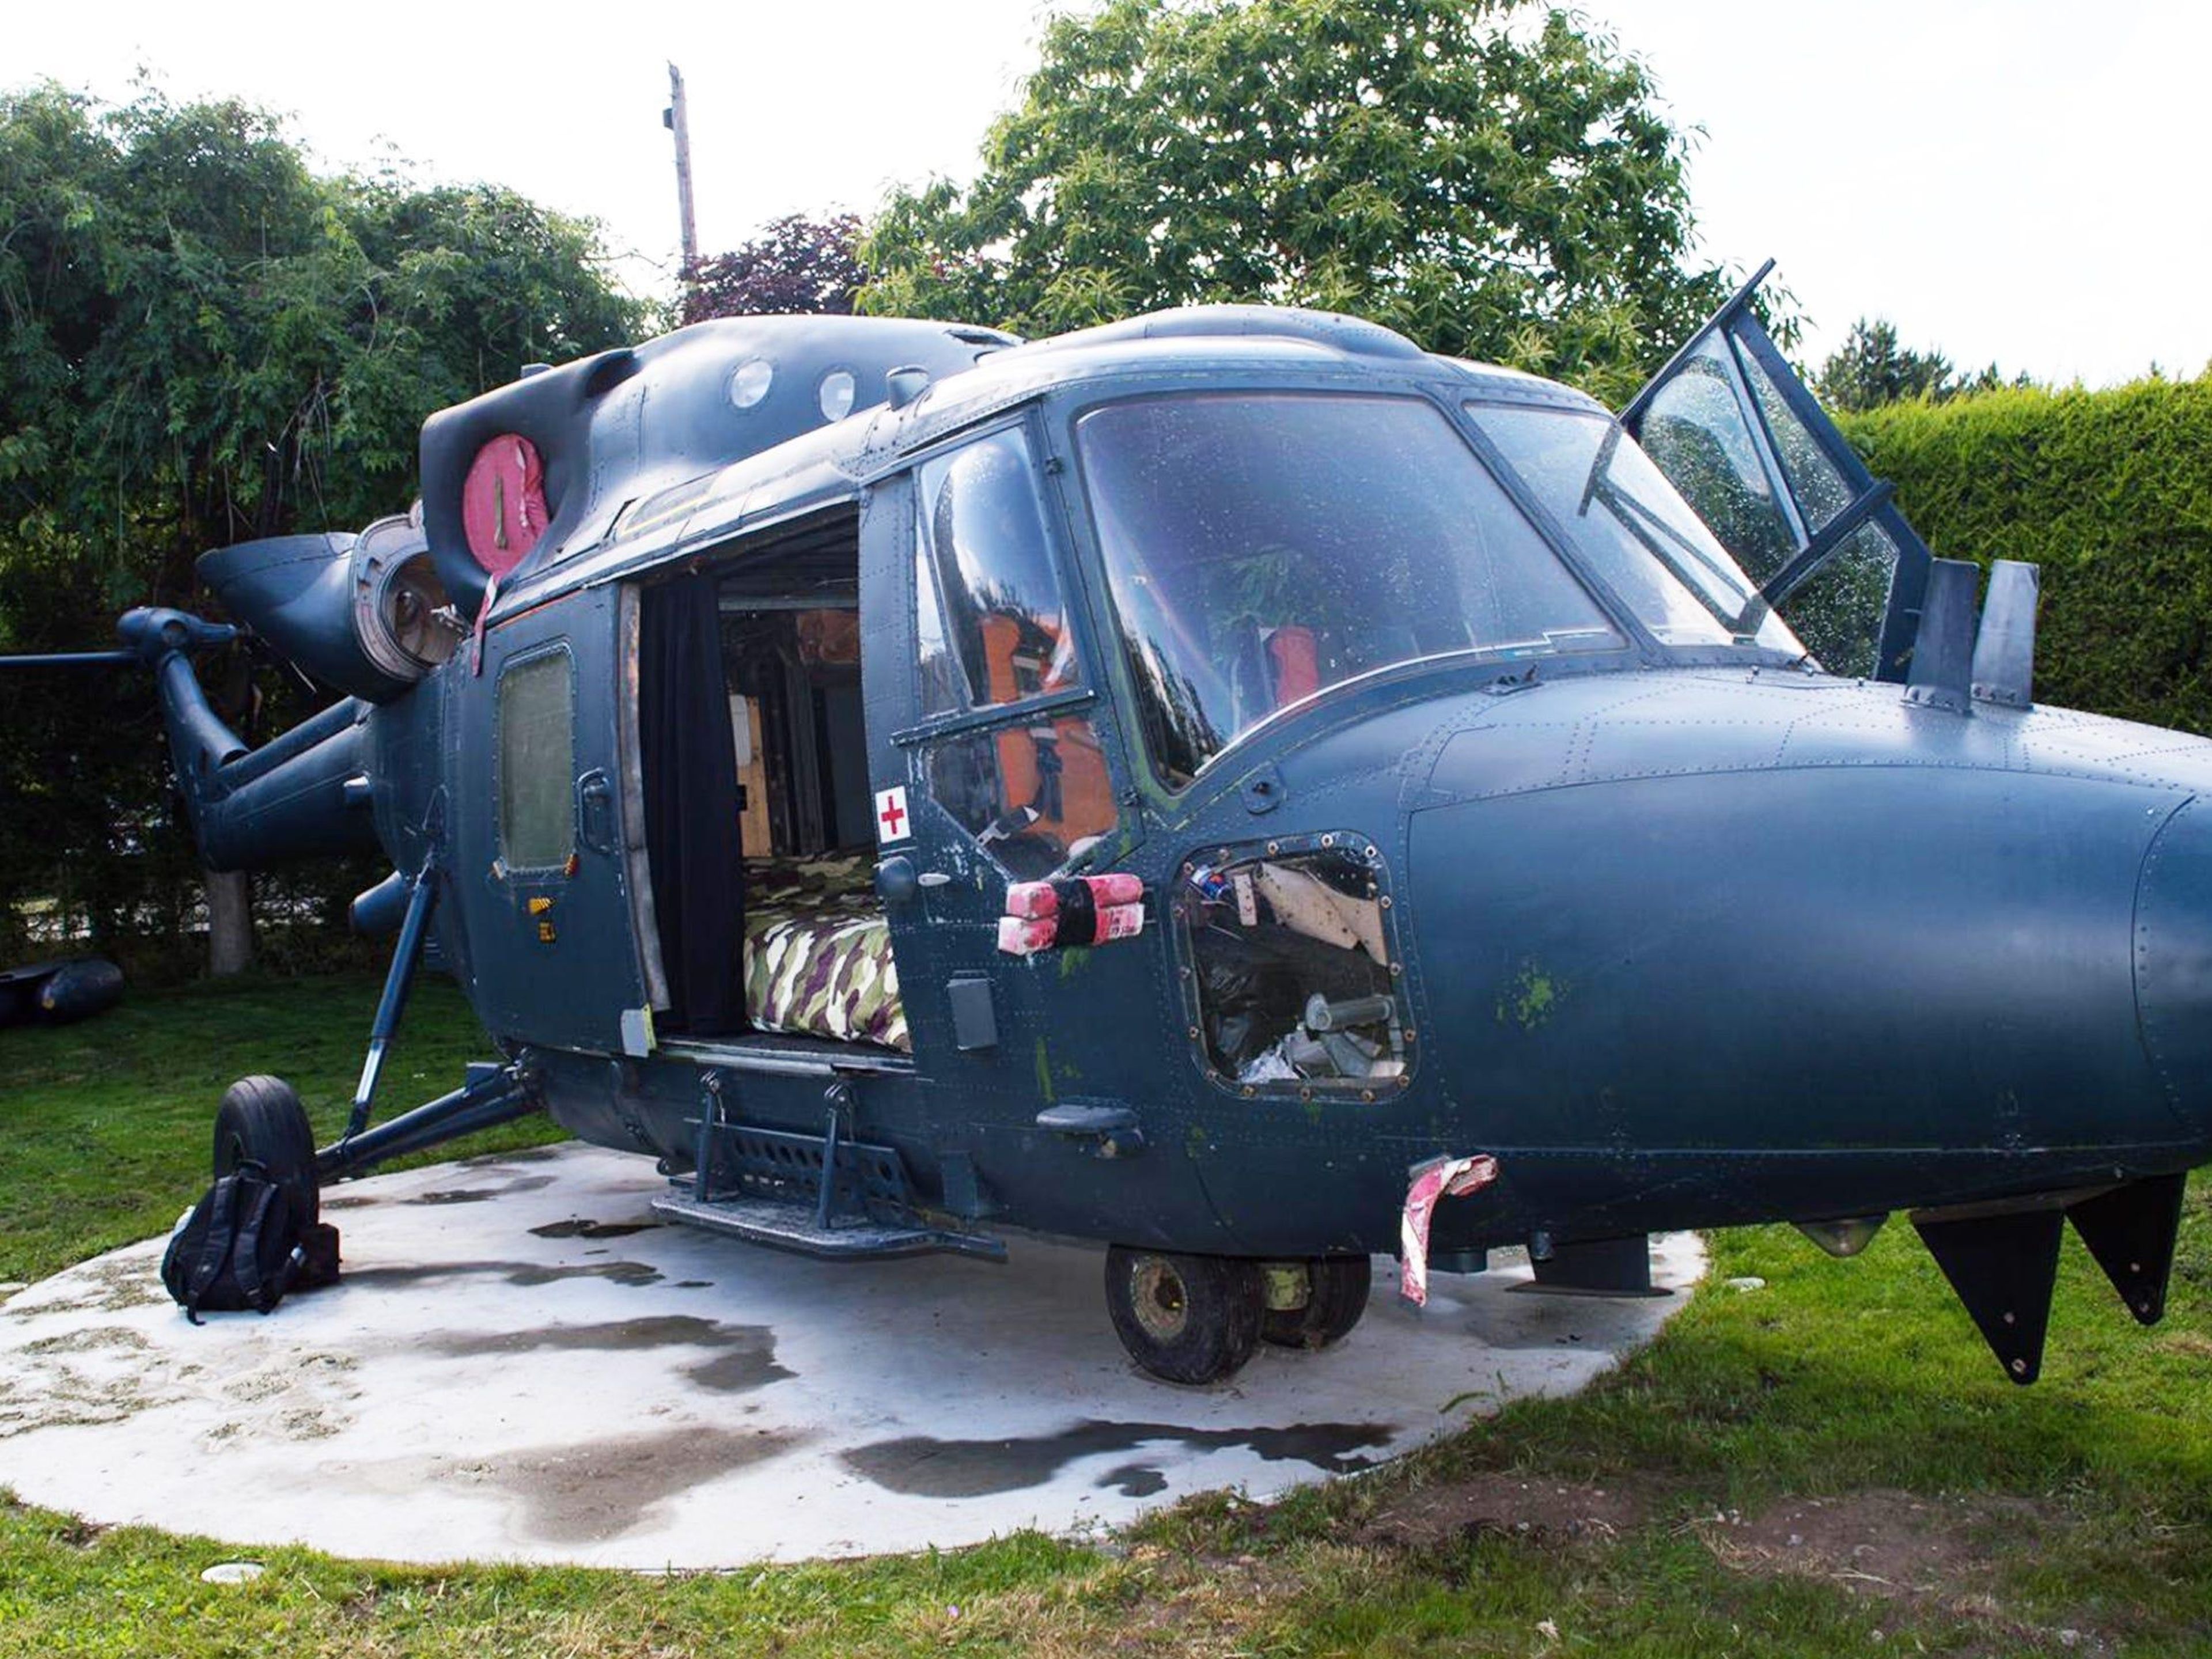 Un helicóptero reconvertido en Airbnb en Inglaterra.